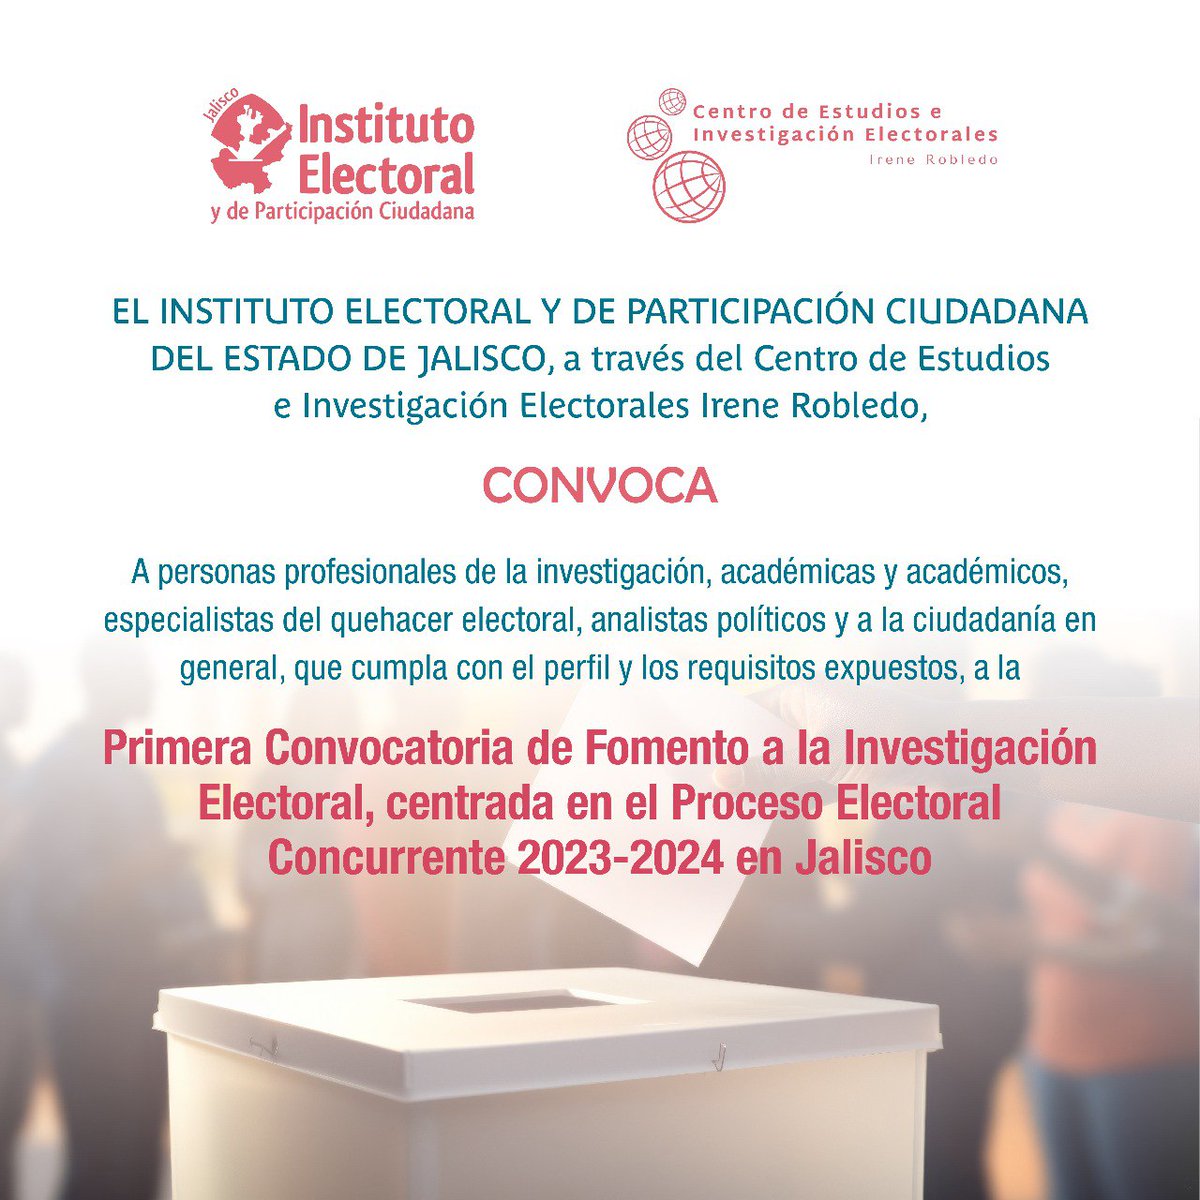 Te invitamos a participar en la 1er convocatoria de Fomento a la Investigación Electoral, centrada en las #Elecciones2024MX en Jalisco, podrás consultar las bases, temáticas y registro en el siguiente link: 
➡️ iepc.cc/NrRpvd9

#TuVozEsElPoder #IEPCesChido #EsNetaVota